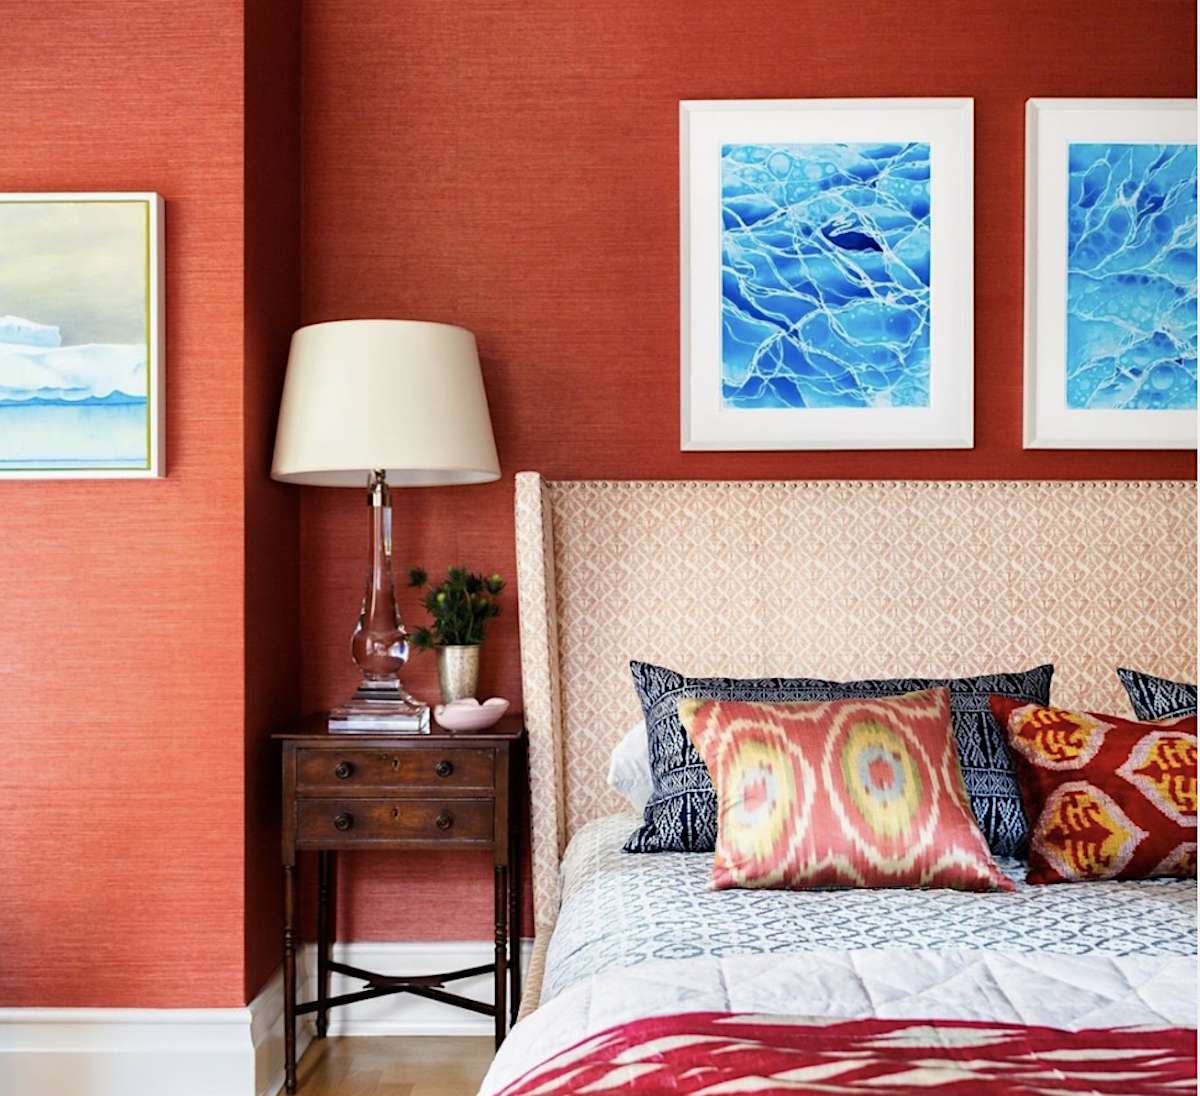 dormitorio rojo con estampados oceánicos sobre la cama, cabecero con dibujos blancos, mesita de noche de madera oscura